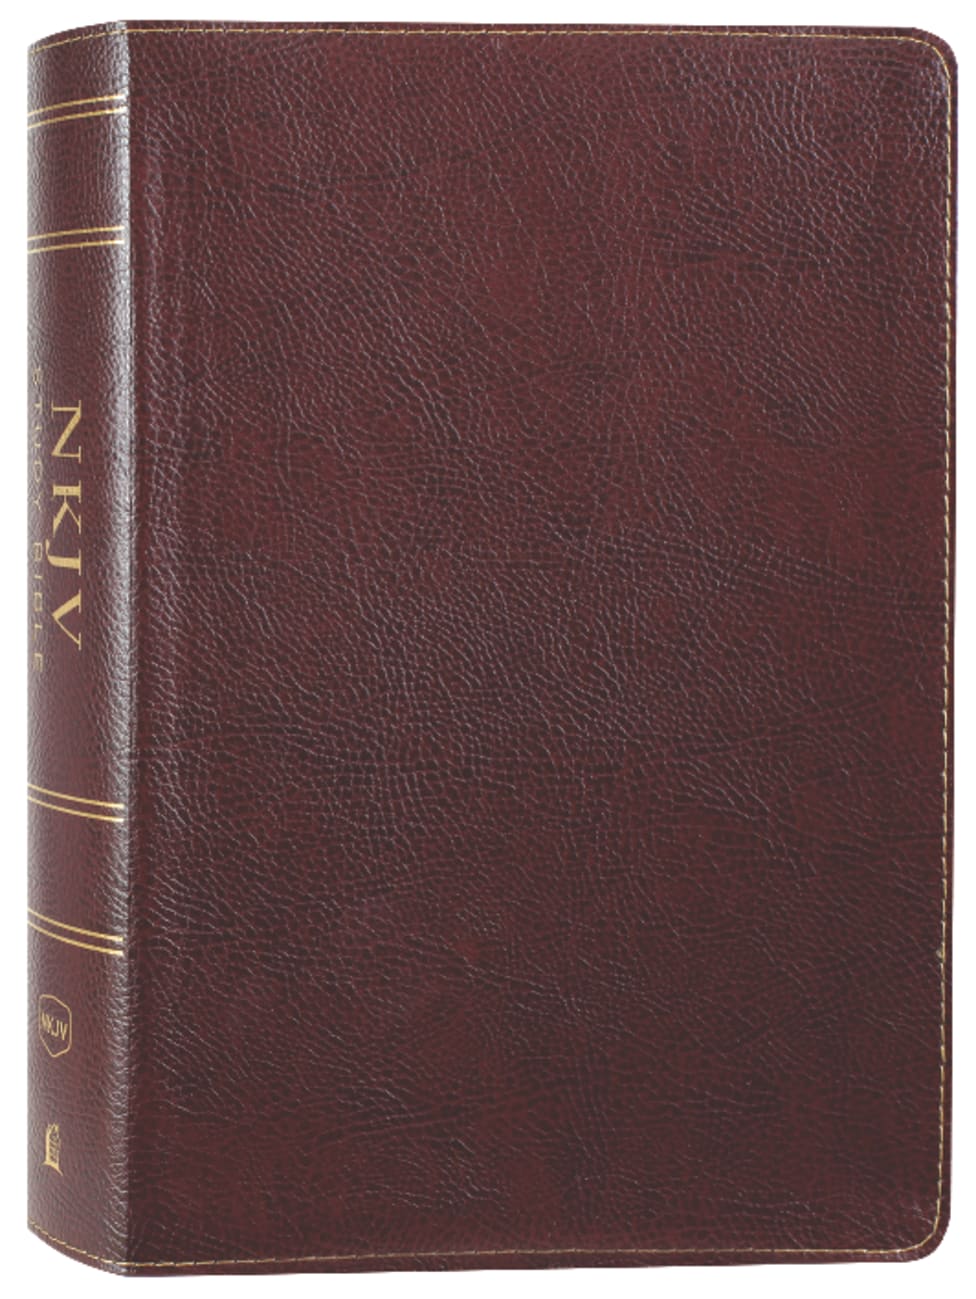 NKJV Study Bible Burgundy Full-Color (Black Letter Edition) Bonded Leather